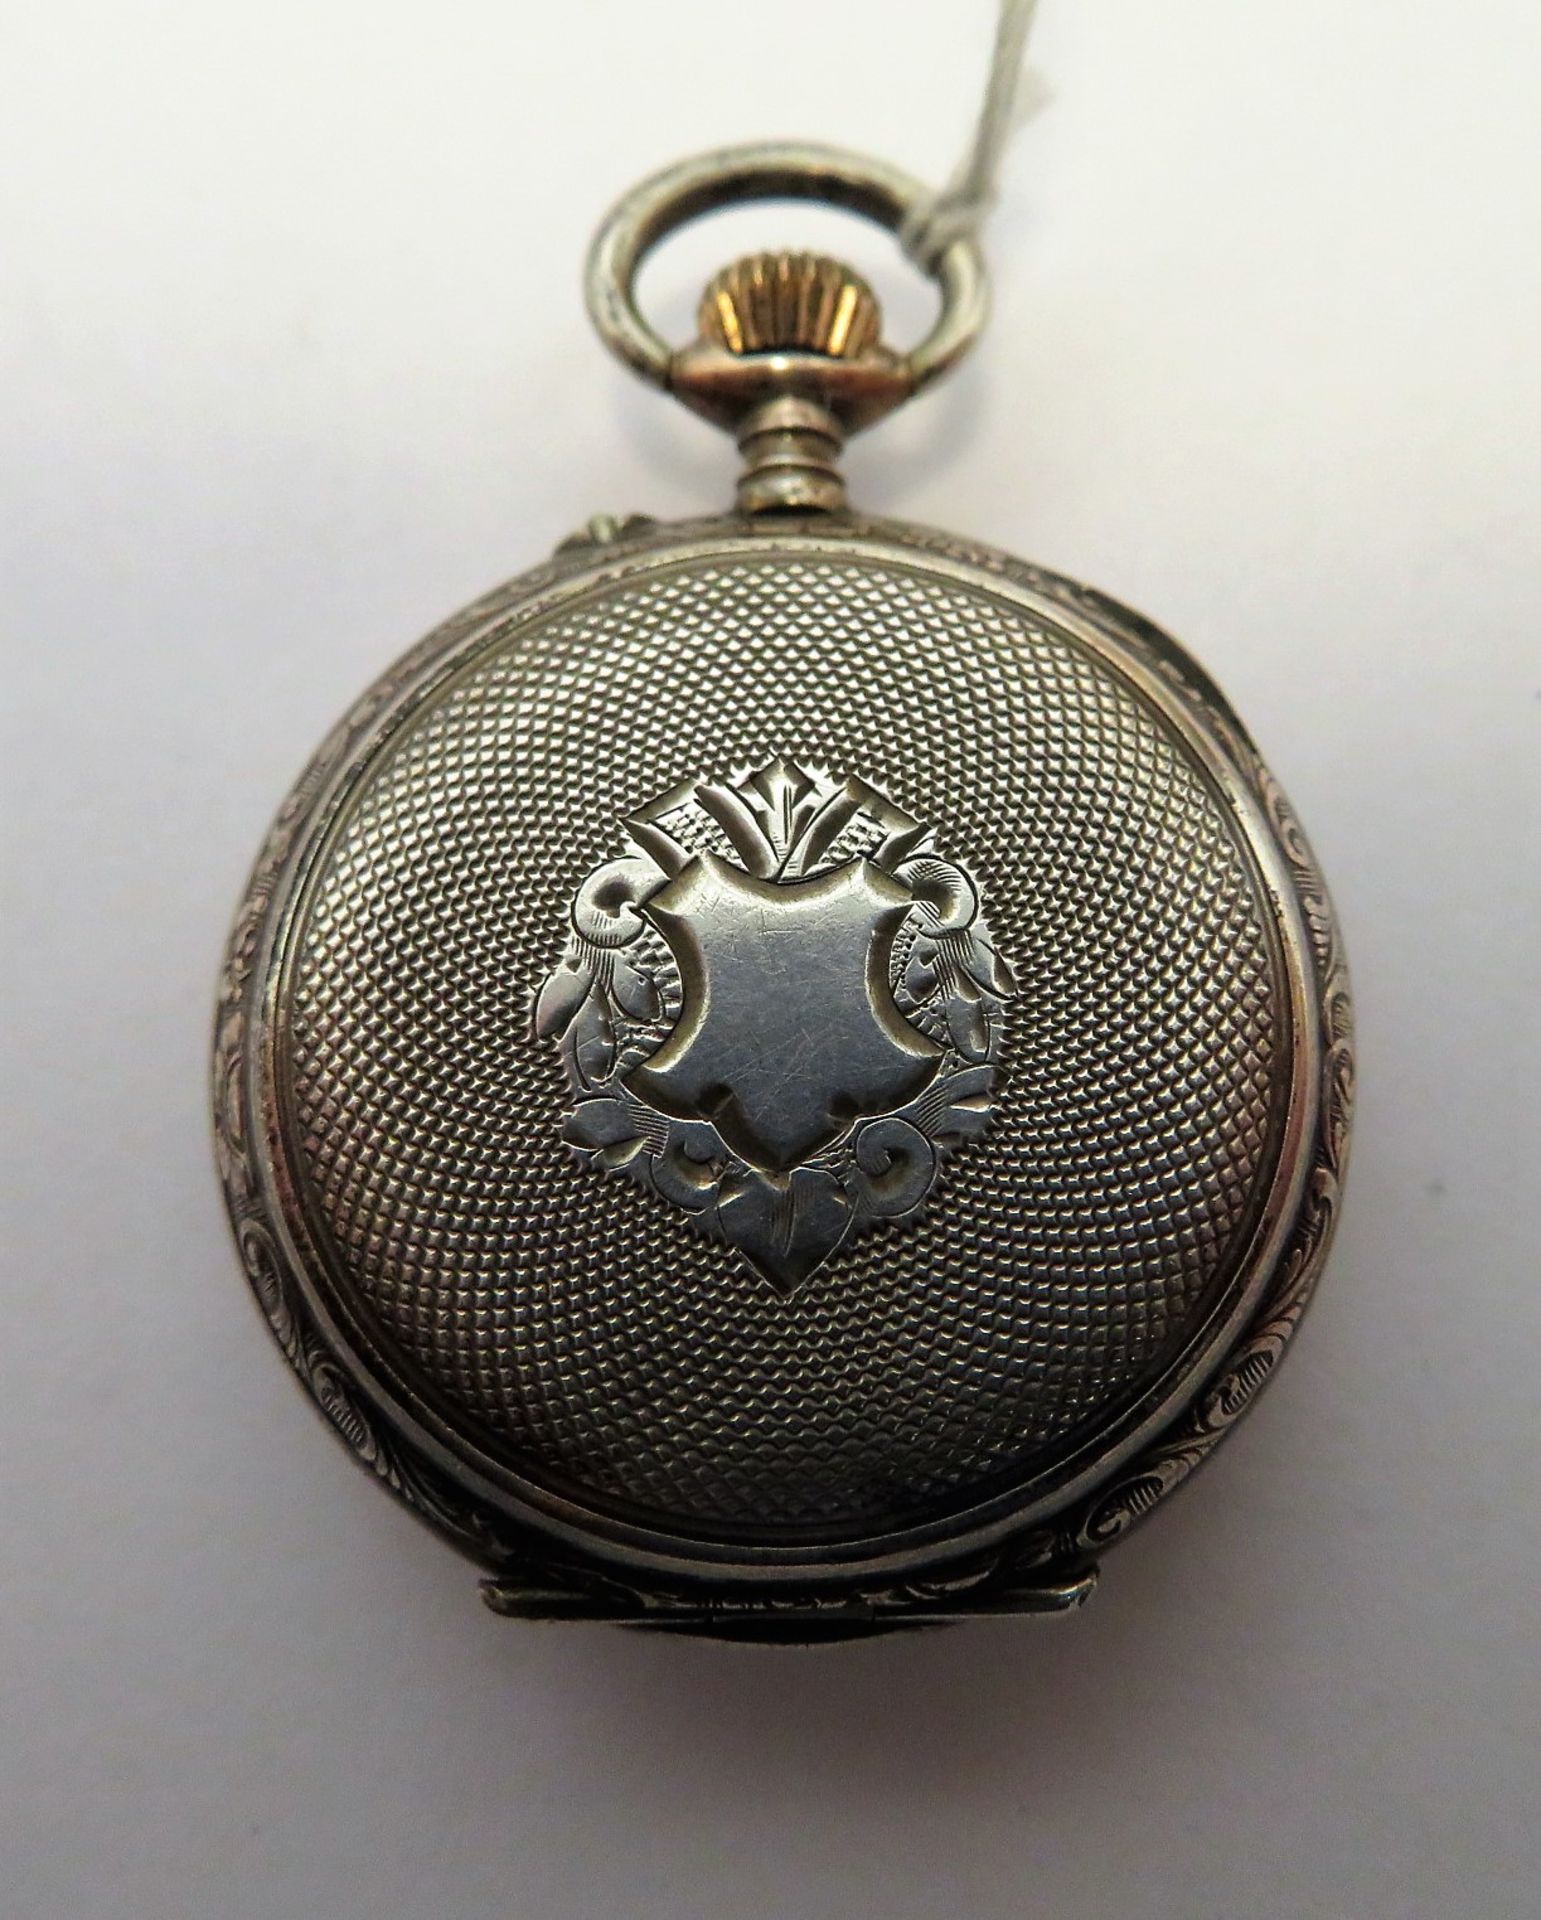 Damentaschenuhr, um 1900, Gehäuse und Innendeckel 800er Silber, gepunzt, Kronen - Bild 2 aus 3